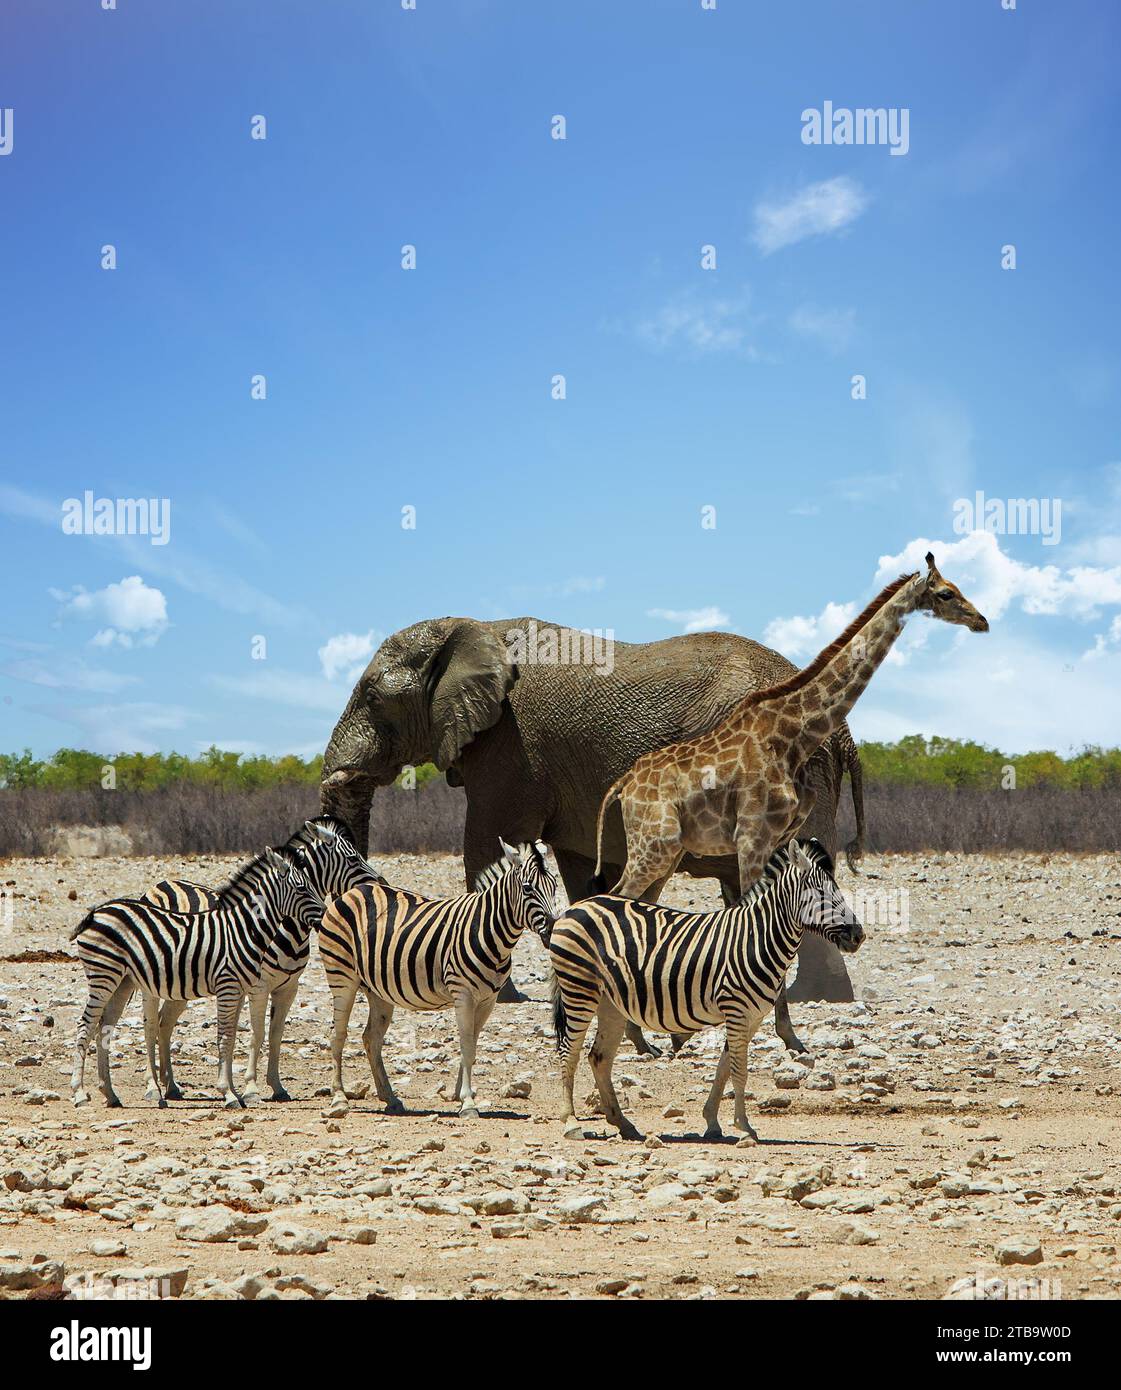 Portrait vue d'un éléphant, d'un troupeau de zèbre et d'une girafe debout ensemble sur la savane africaine Banque D'Images